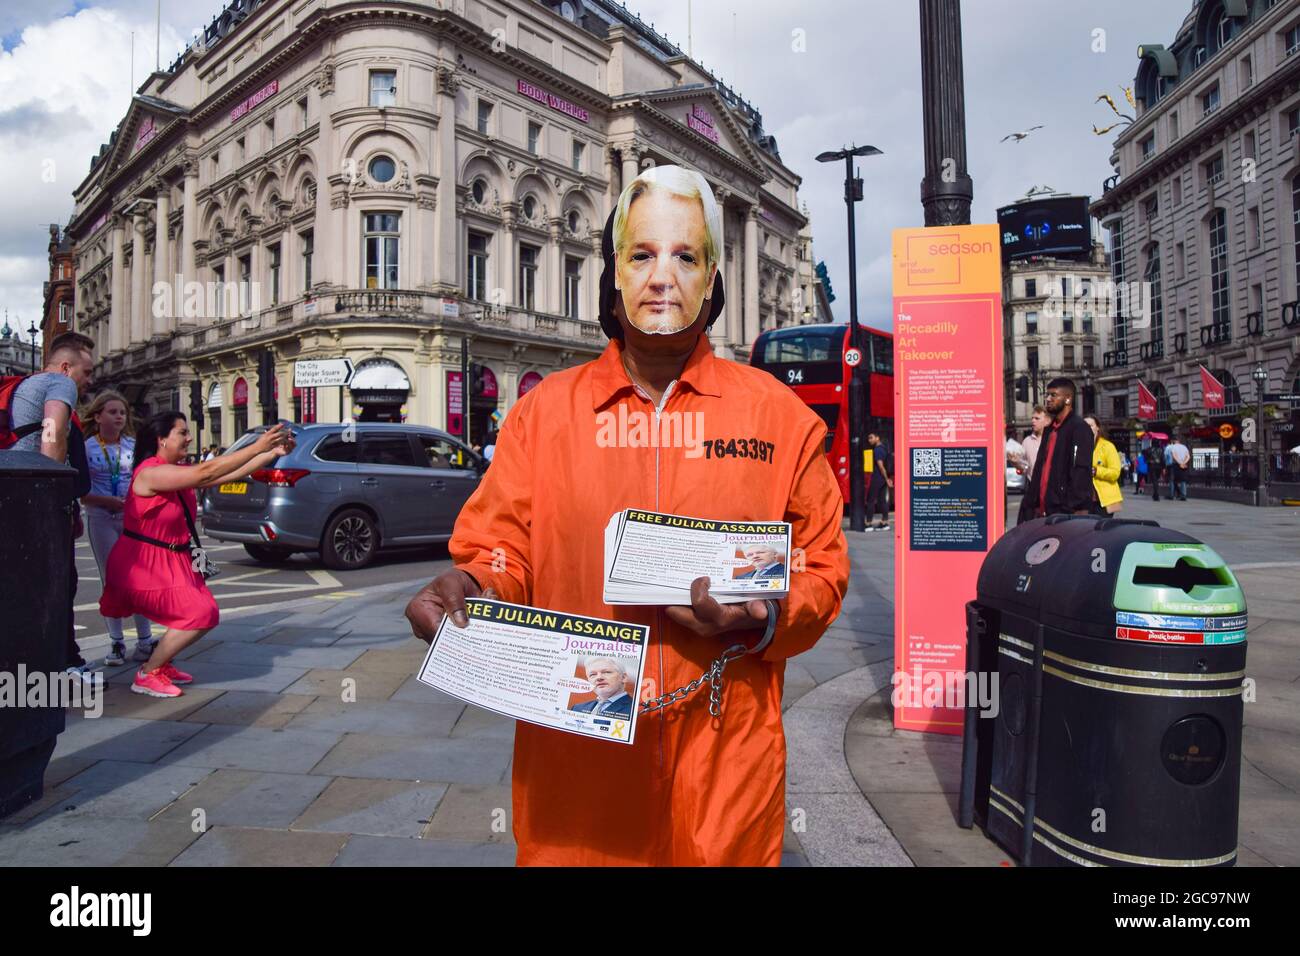 London, Großbritannien. August 2021. Ein Demonstrant, der Gefängniskleidung und eine Assange-Maske trägt, verteilt während der Freien Julian Assange-Proteste im Piccadilly Circus Flugblätter. Im Rahmen der anhaltenden Proteste, die die Freilassung des WikiLeaks-Gründers forderten, versammelten sich erneut Demonstranten. (Kredit: Vuk Valcic / Alamy Live News) Stockfoto